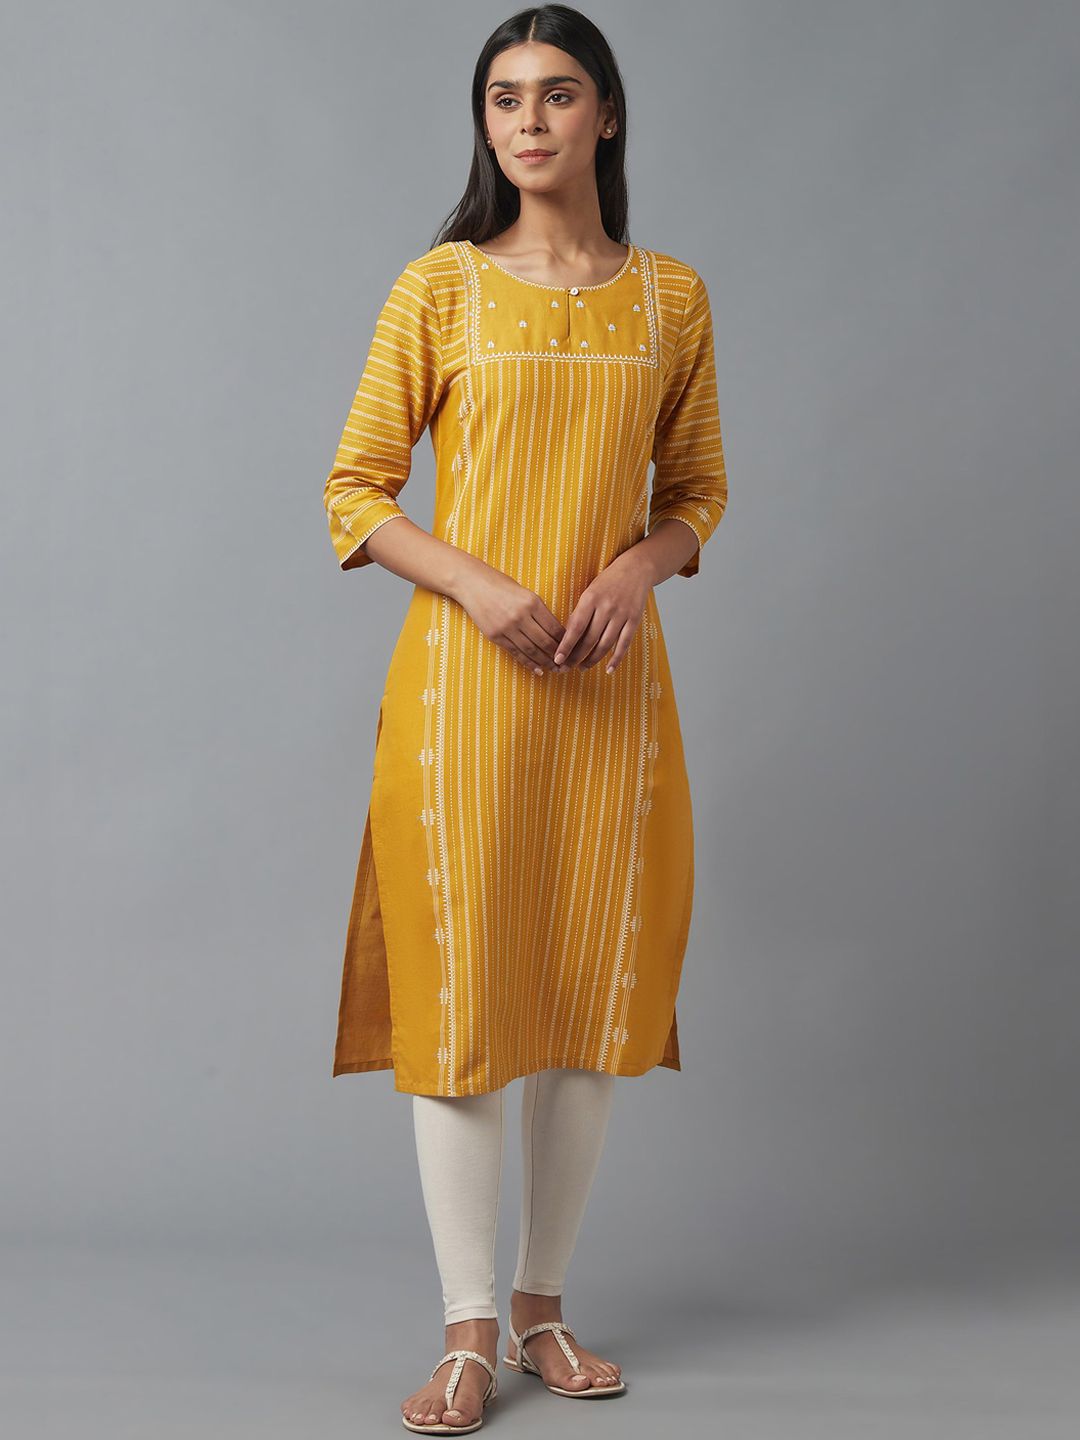 W Women Yellow & White Striped Keyhole Neck Kurta Price in India